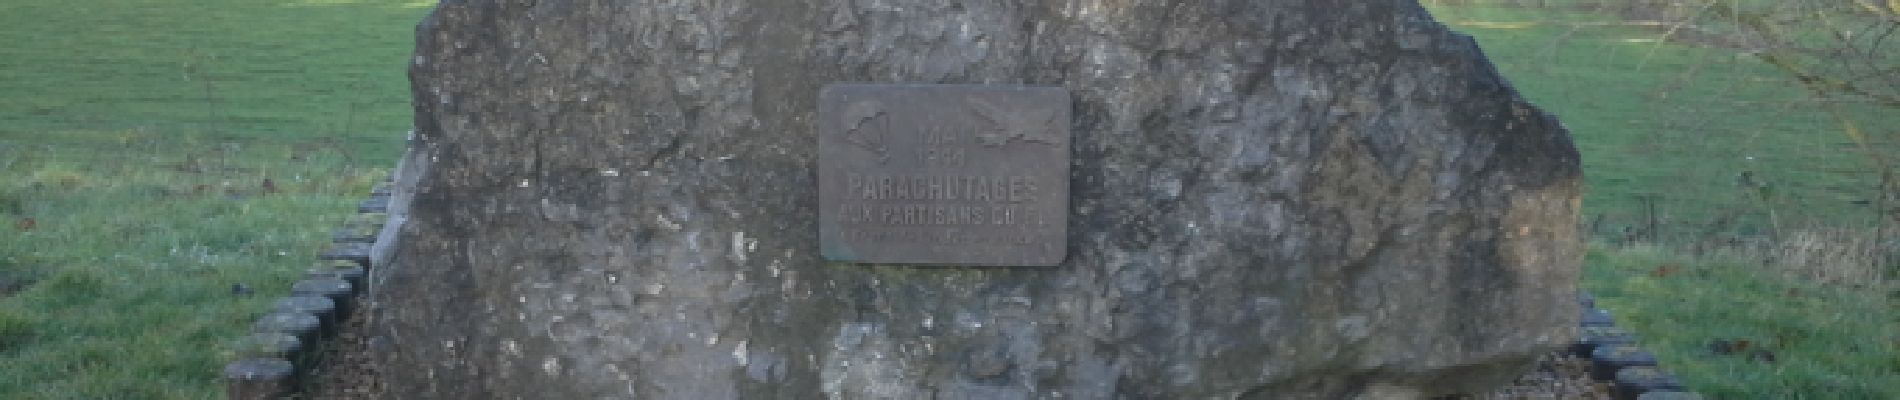 Point of interest Hotton - Monument dédié aux parachutistes - Photo